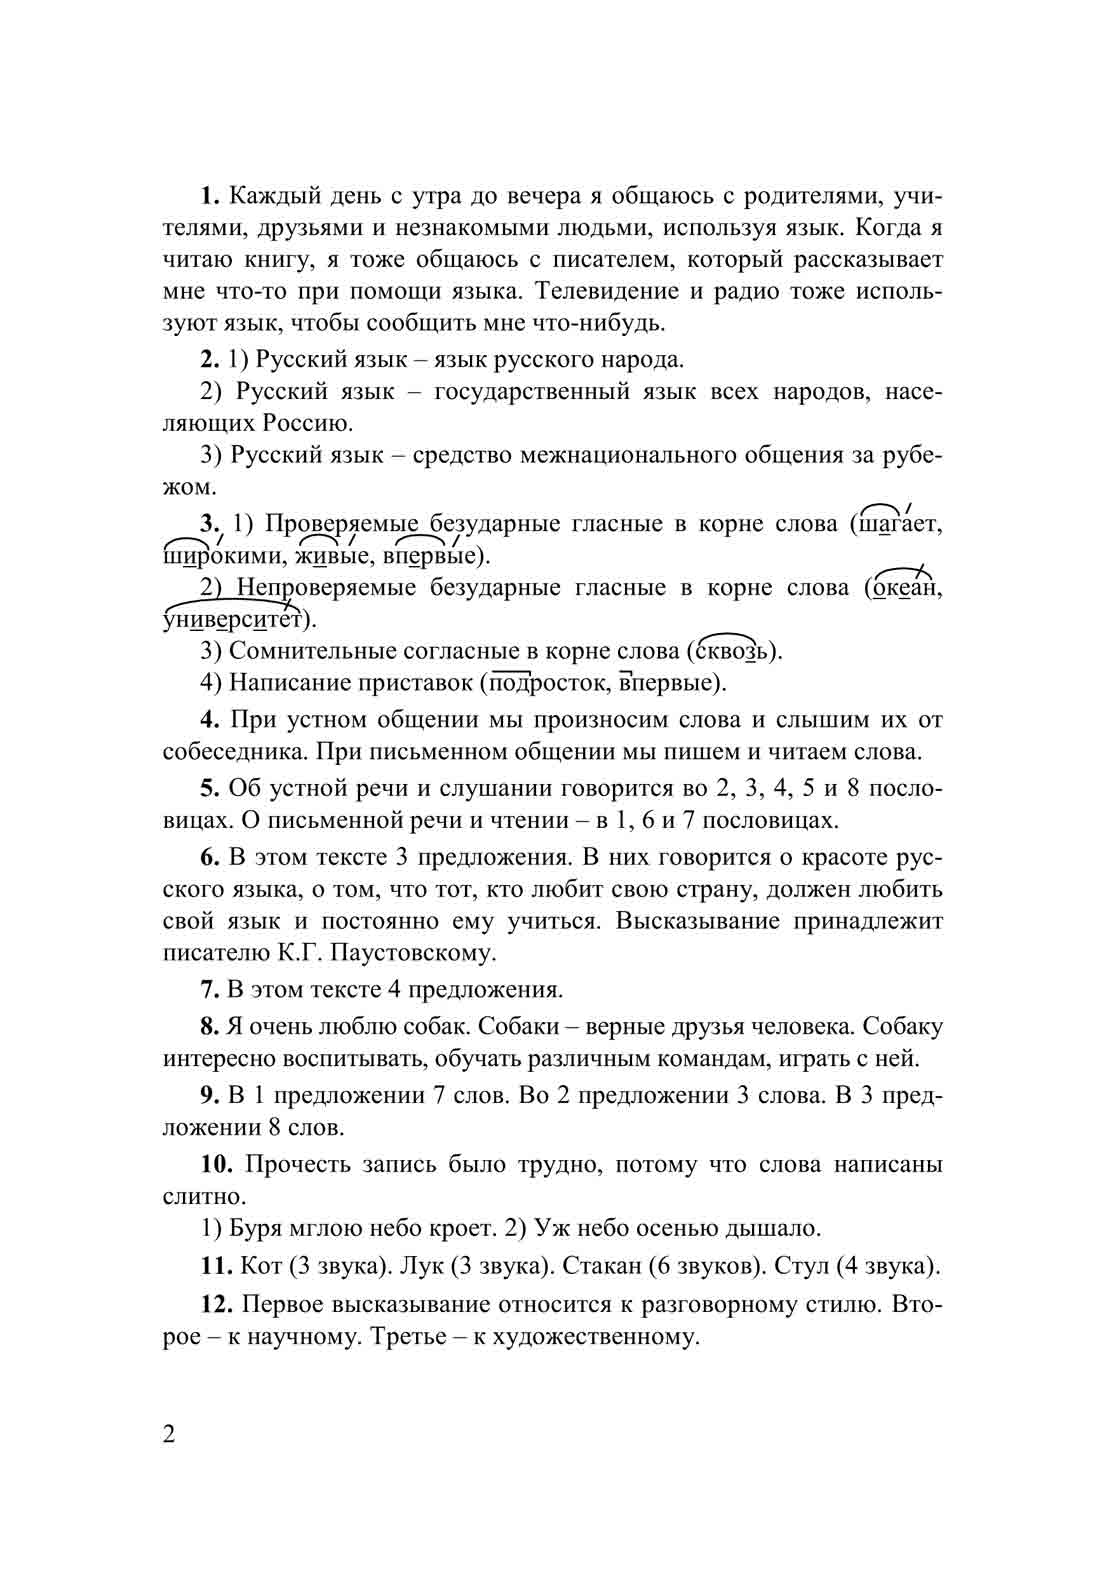 образец гдз (решебника) по русскому языку для 5 классов / Ладыженская